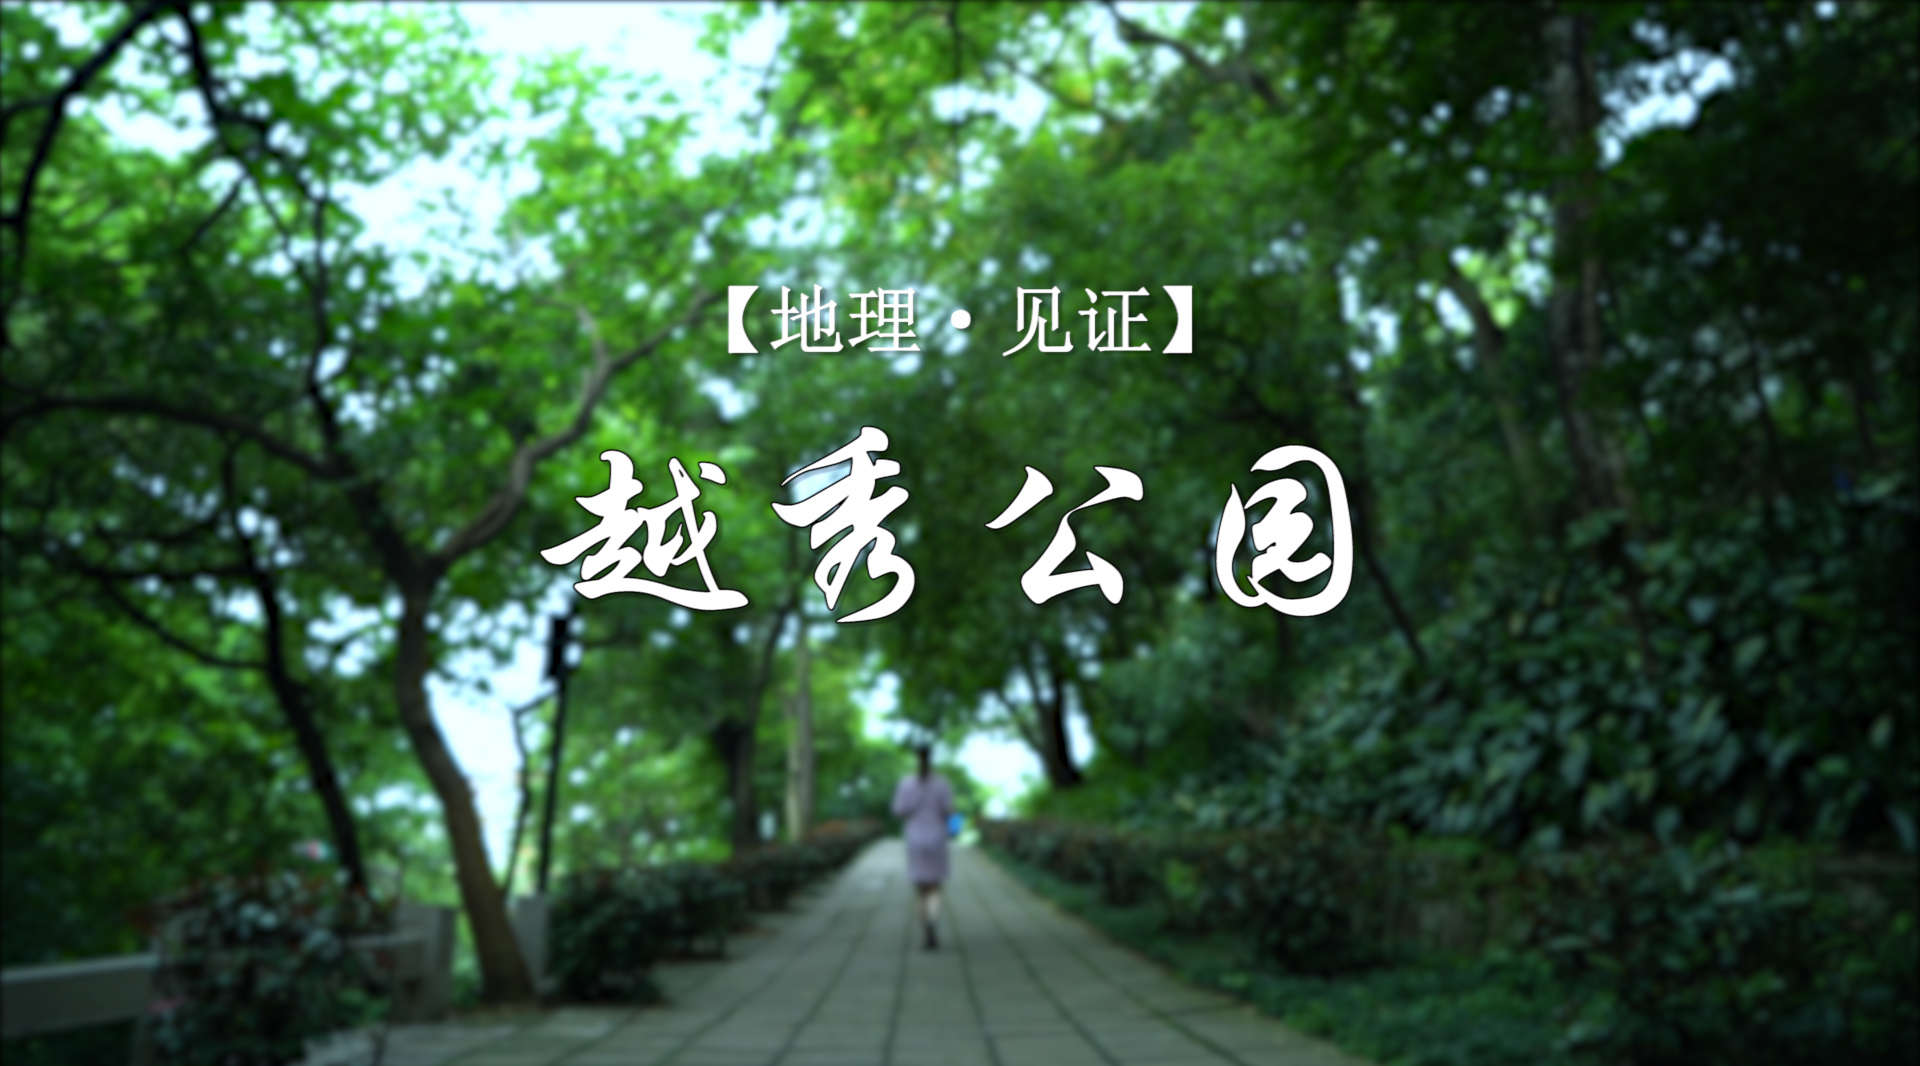 国家旅游地理发布广州文化之旅纪录片《越秀公园》